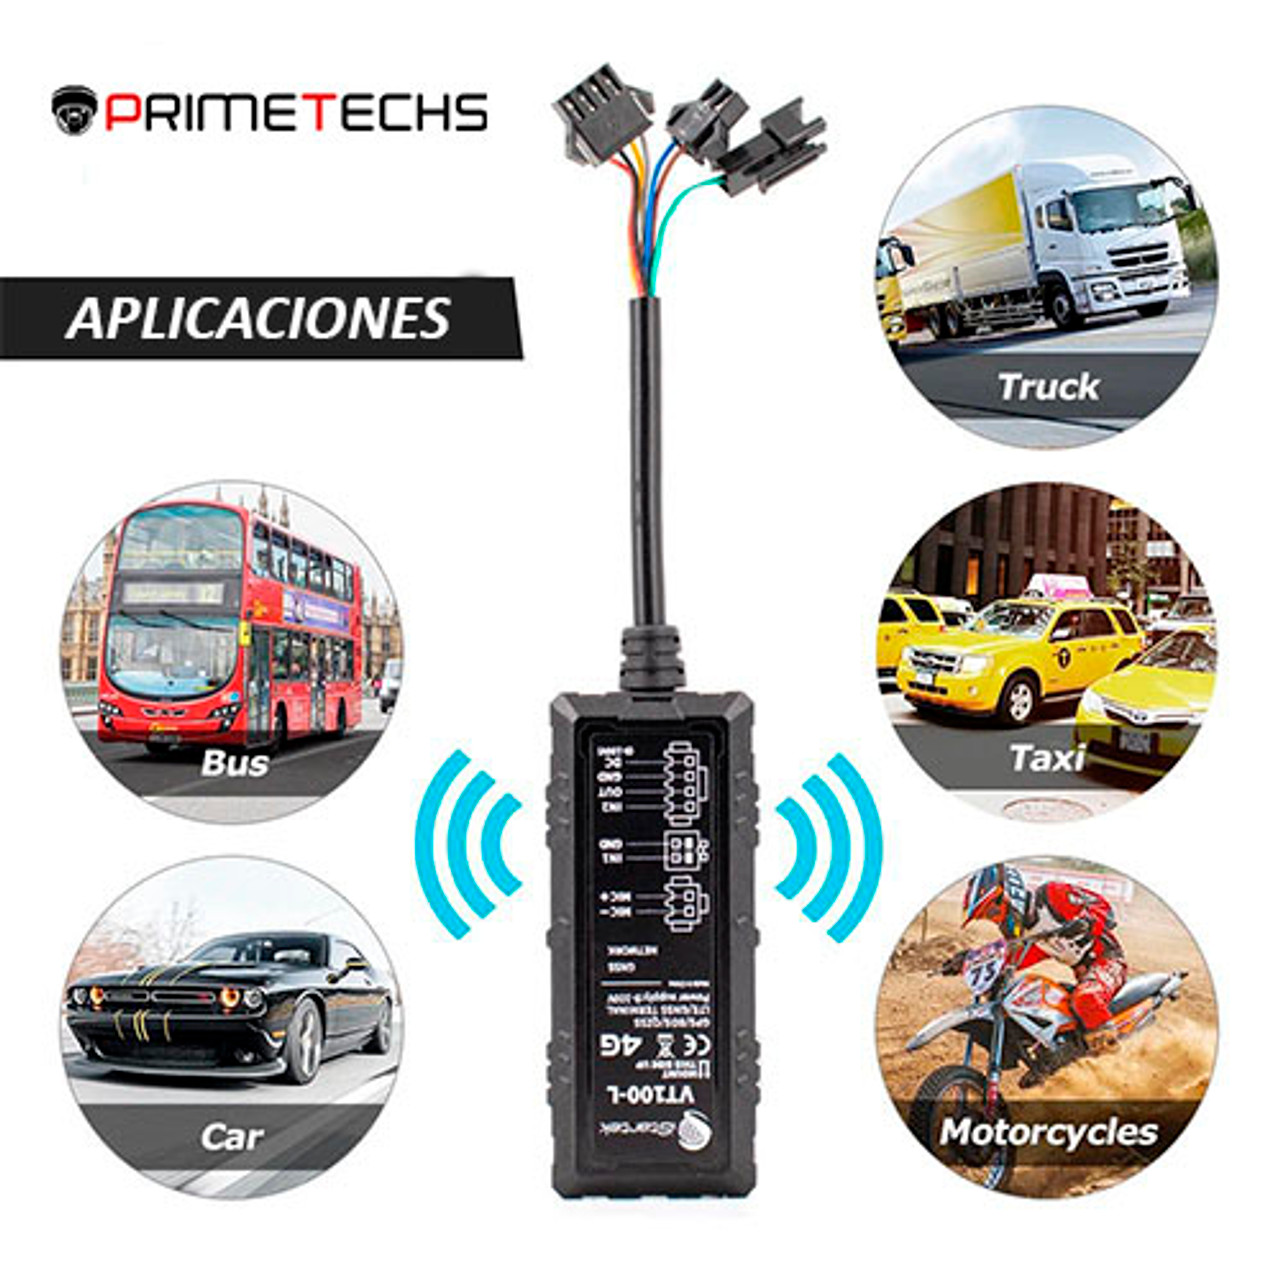 GPS Rastreador VT100 GPS Moto, Automóvil, Camioneta o Maquinaria.  Impermeable IP66, Múltiples I/O (Entradas y